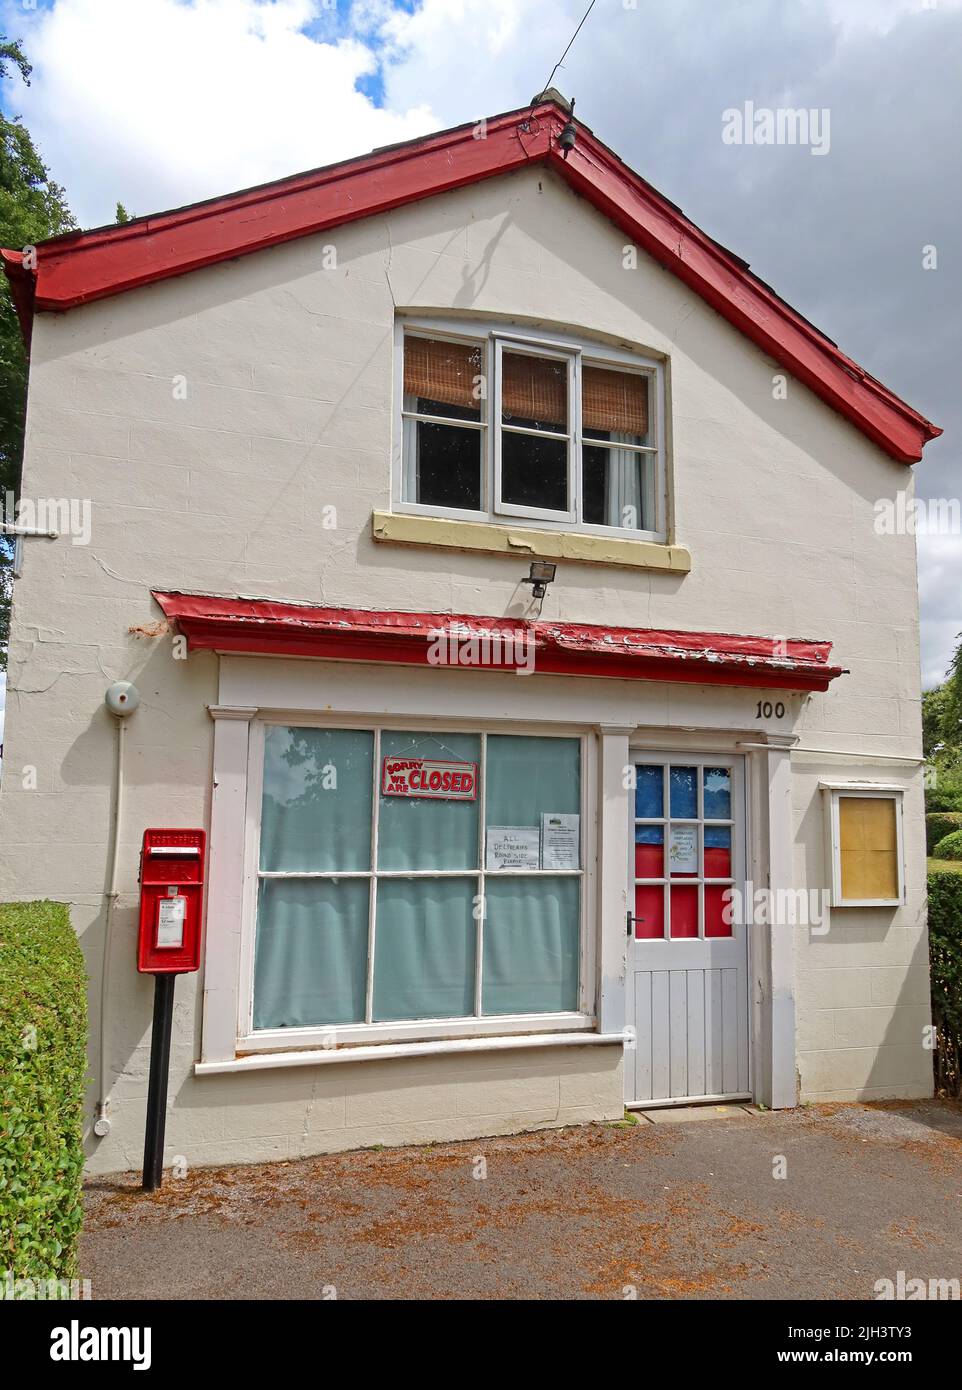 Le Dunham Massey rural village shop, un ancien bureau de poste perdu, maintenant fermé, Woodhouse LN, Bowden, Altrincham, Cheshire, Angleterre, Royaume-Uni, WA14 5SB Banque D'Images